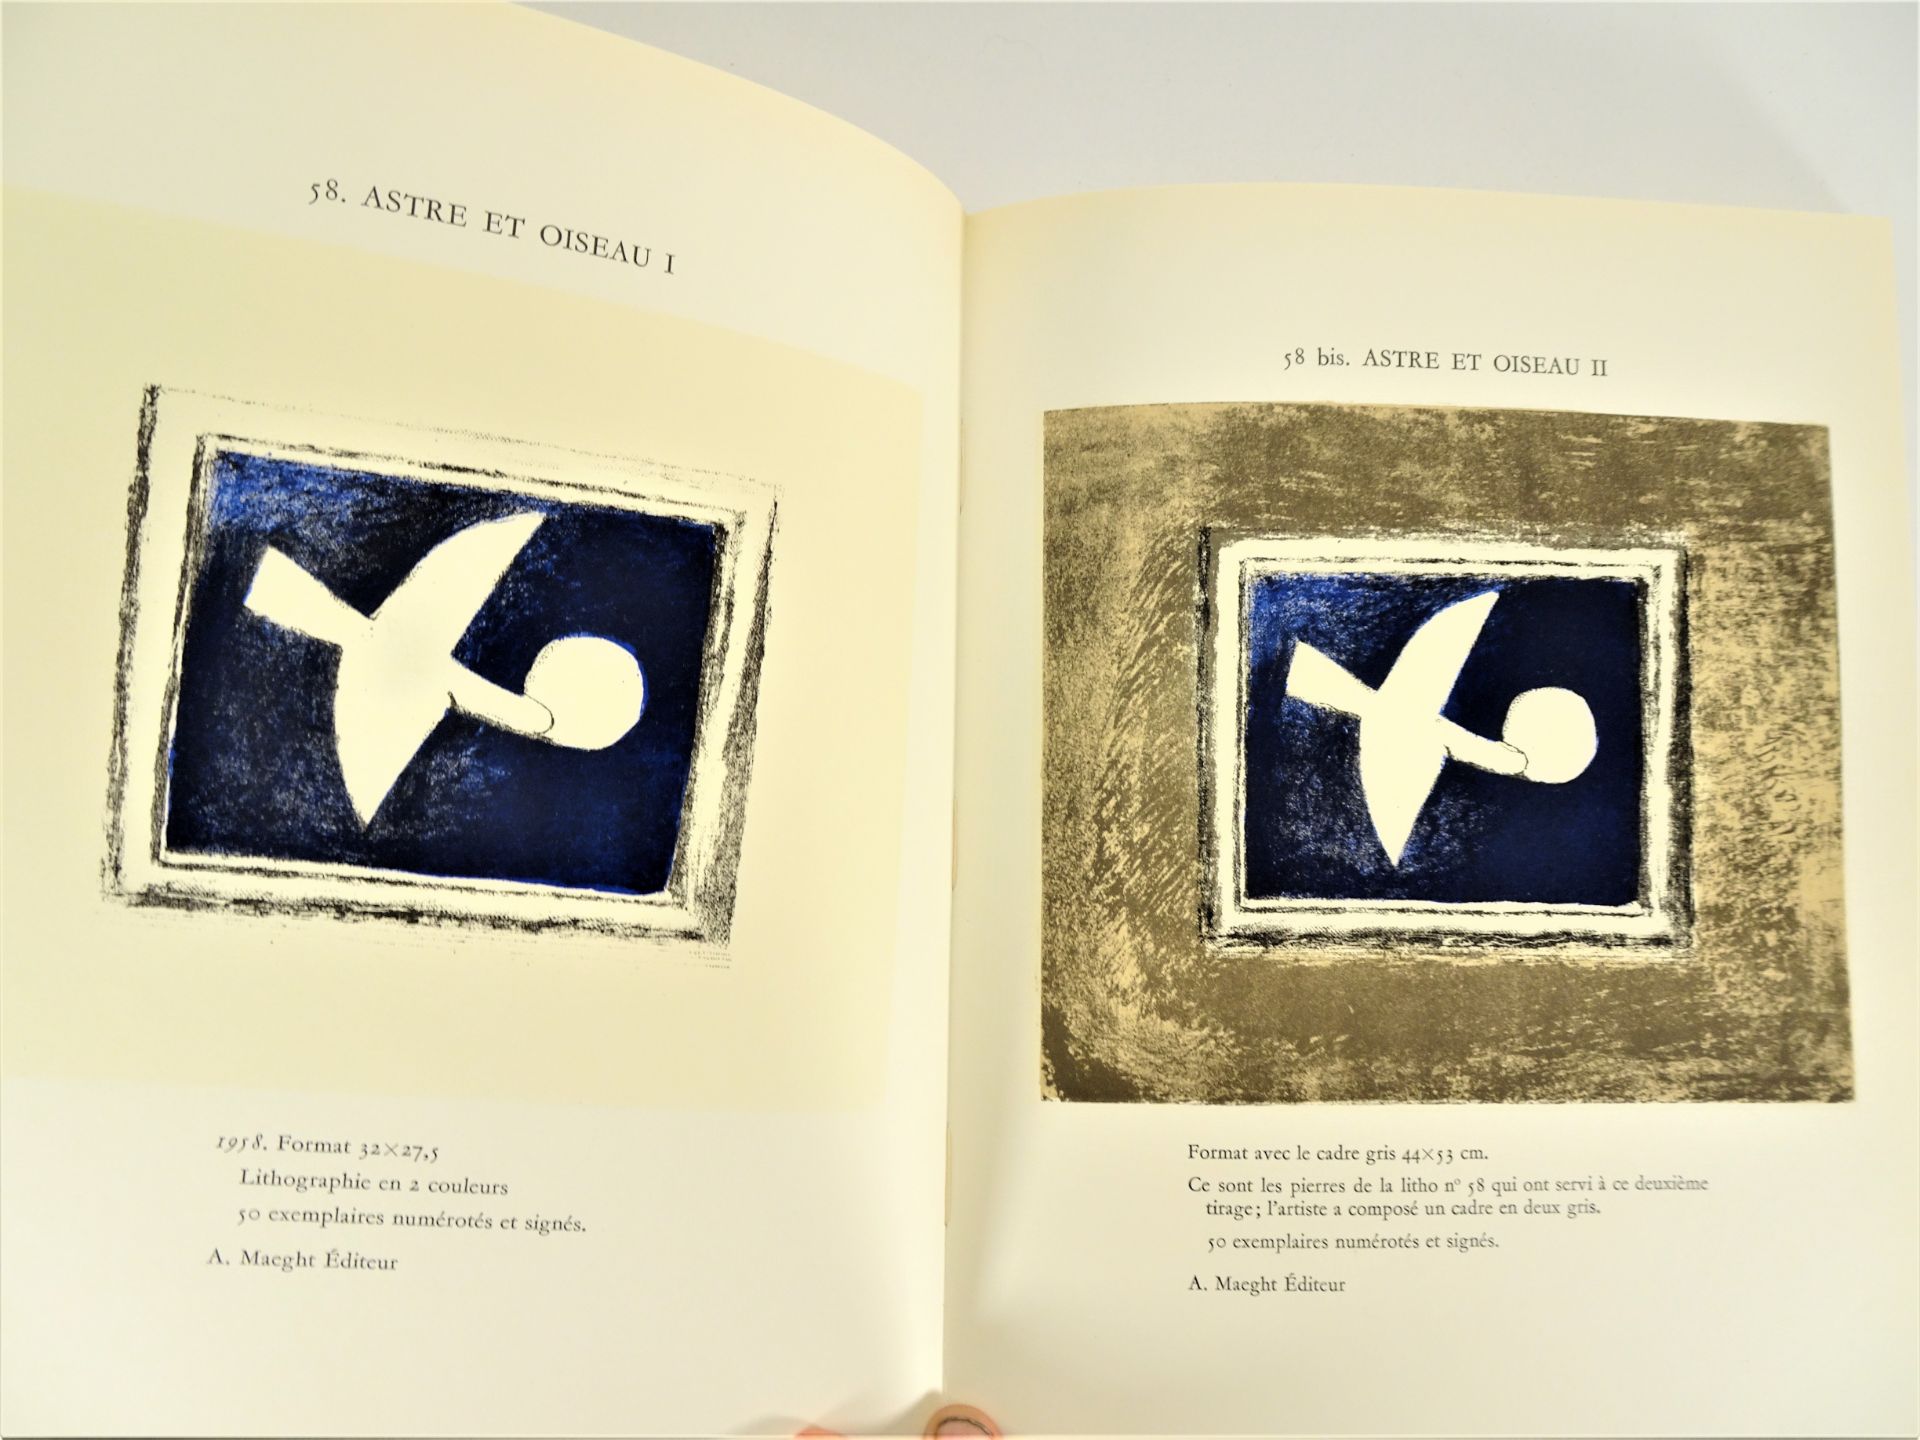 |Art| George Braque, "Braque lithographe", 1963, édition limitée. Fernand Mourlot, catalogue - Image 5 of 12